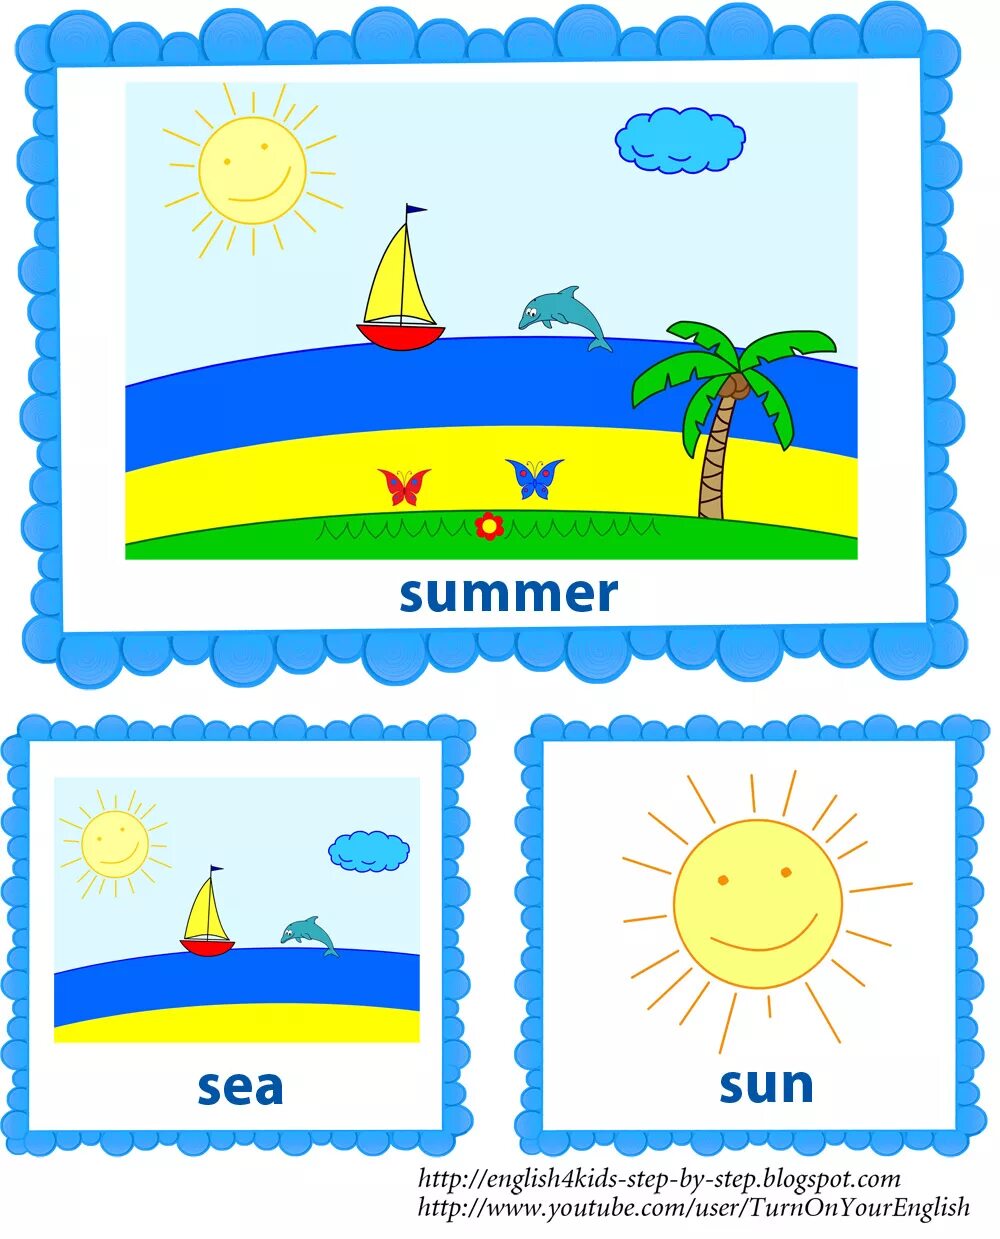 Лето по английски перевод. Тема лето на английском языке для детей. Дети лето английский. Лето карточки для детей. Карточки английский язык для детей по теме лето.